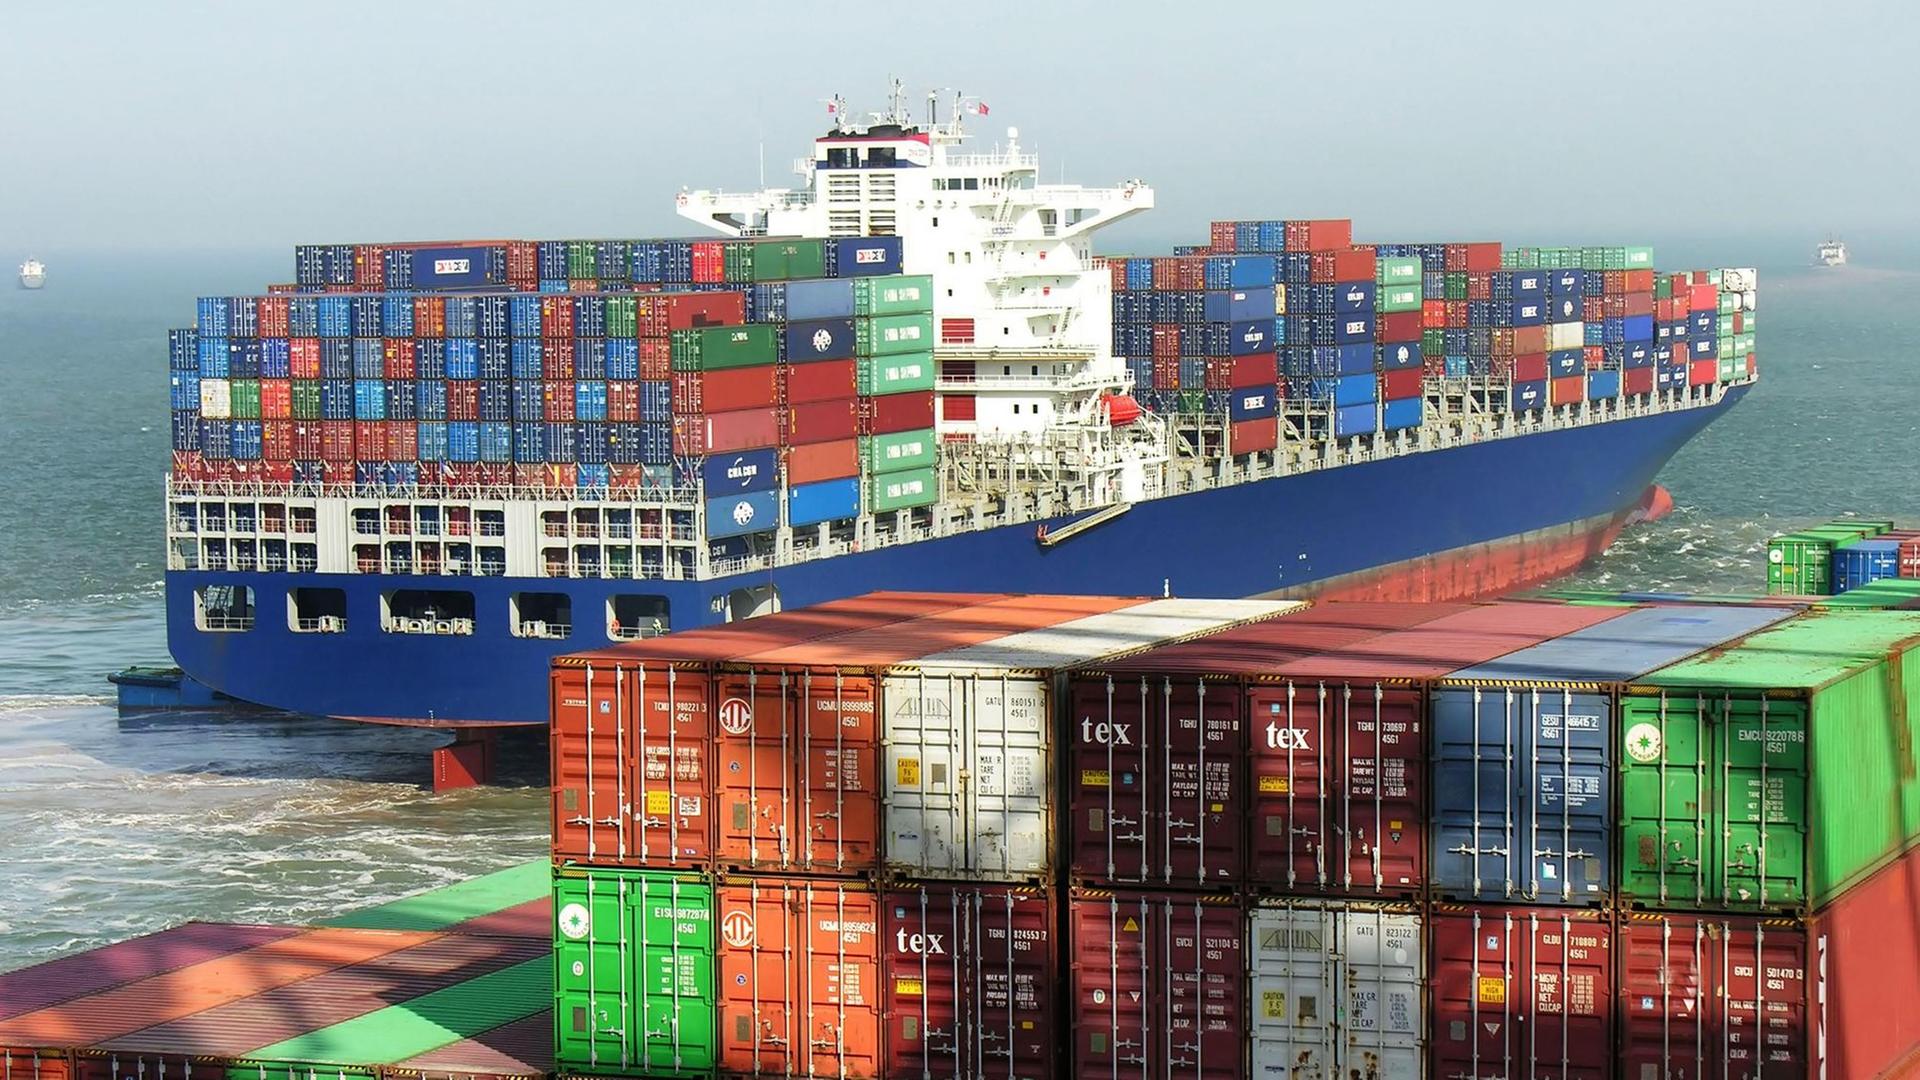 Ein mit vielen Container beladenes Schiff fährt auf dem Meer, im Vordergrund sind noch viele Container im Hafen zu sehen